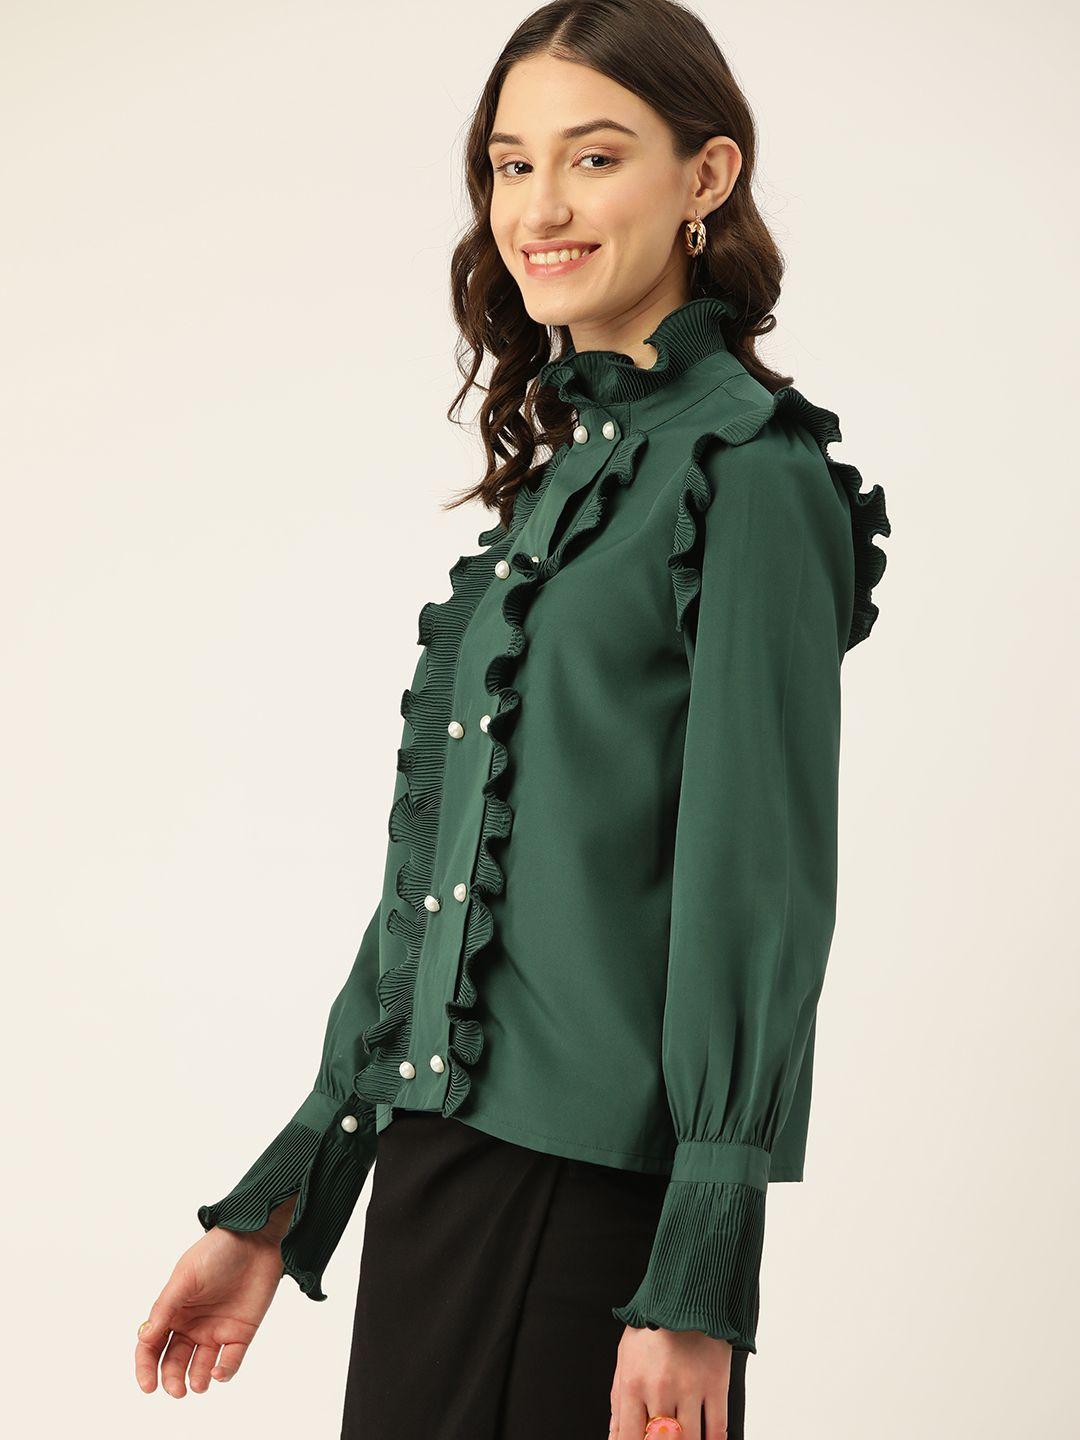 dressberry women green comfort casual shirt